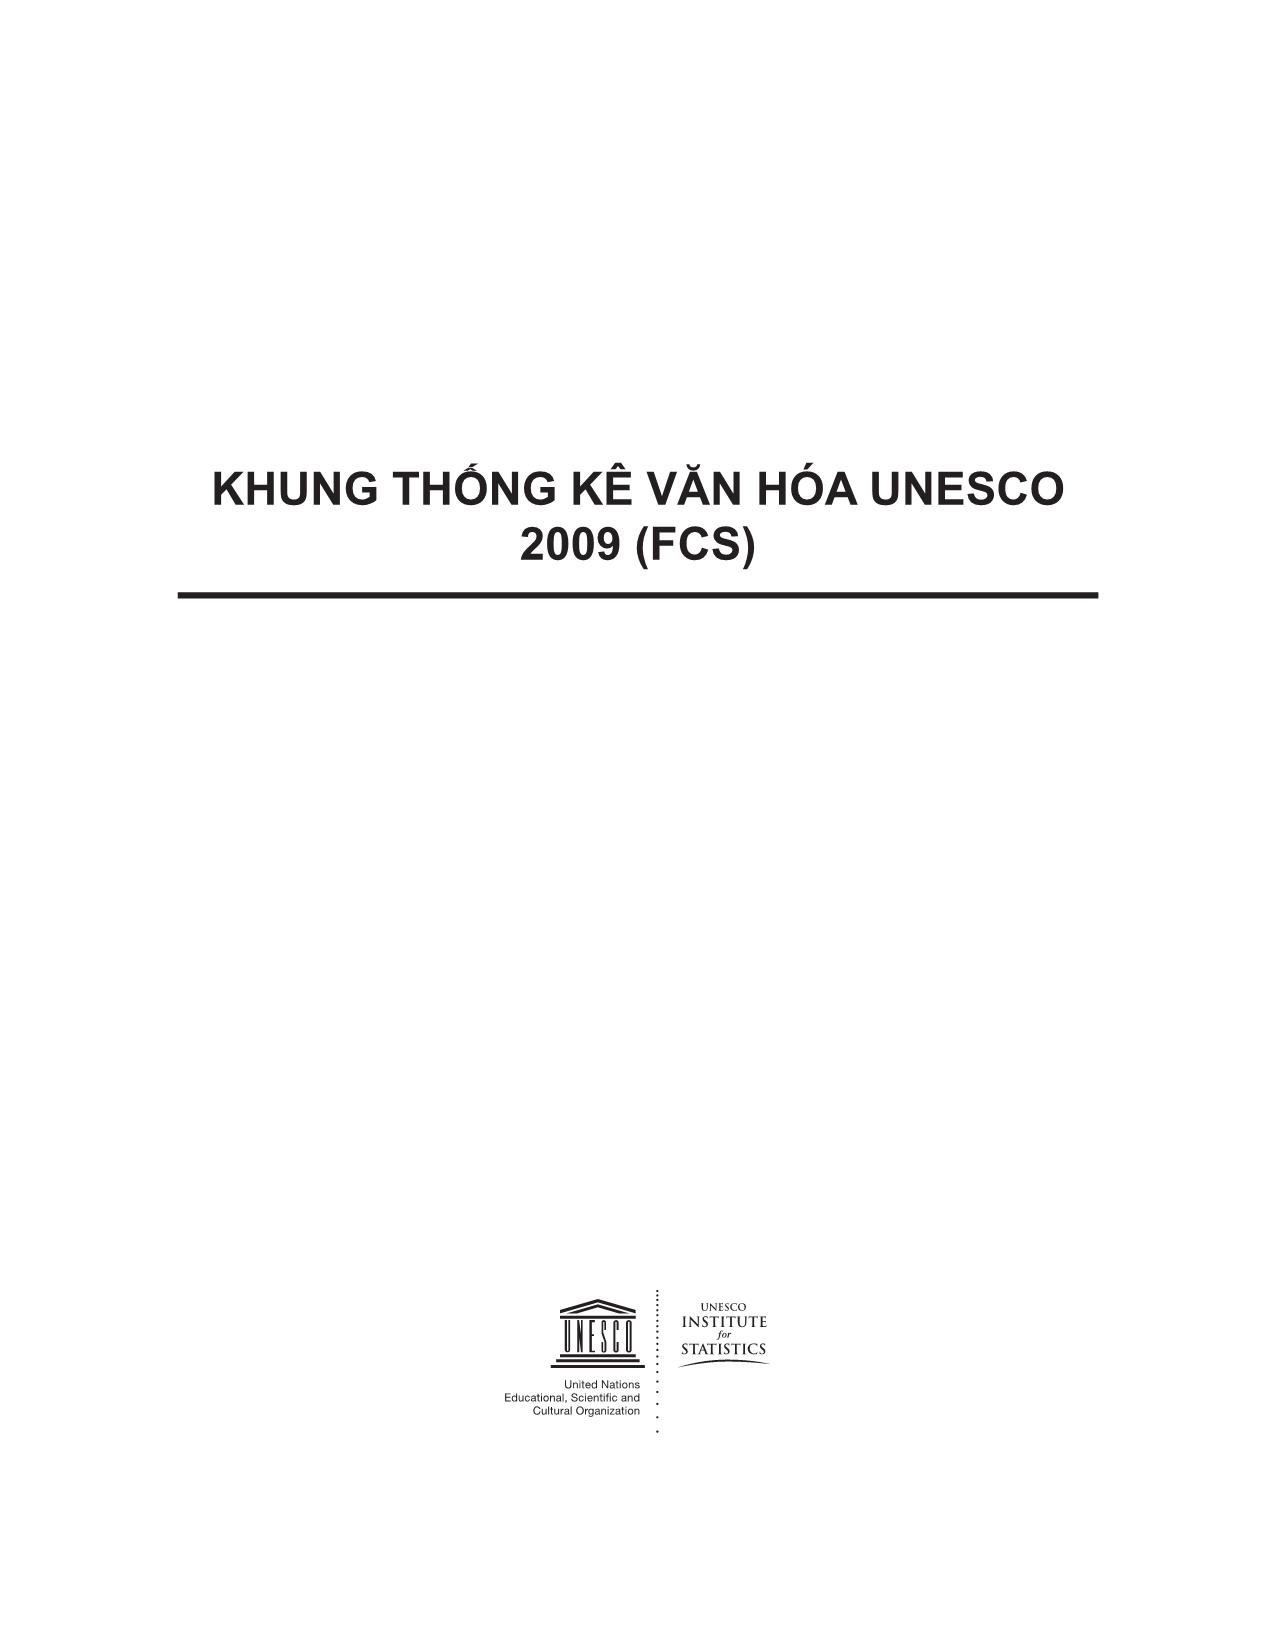 Khung thống kê văn hóa Unesco 2009 FCS) trang 1